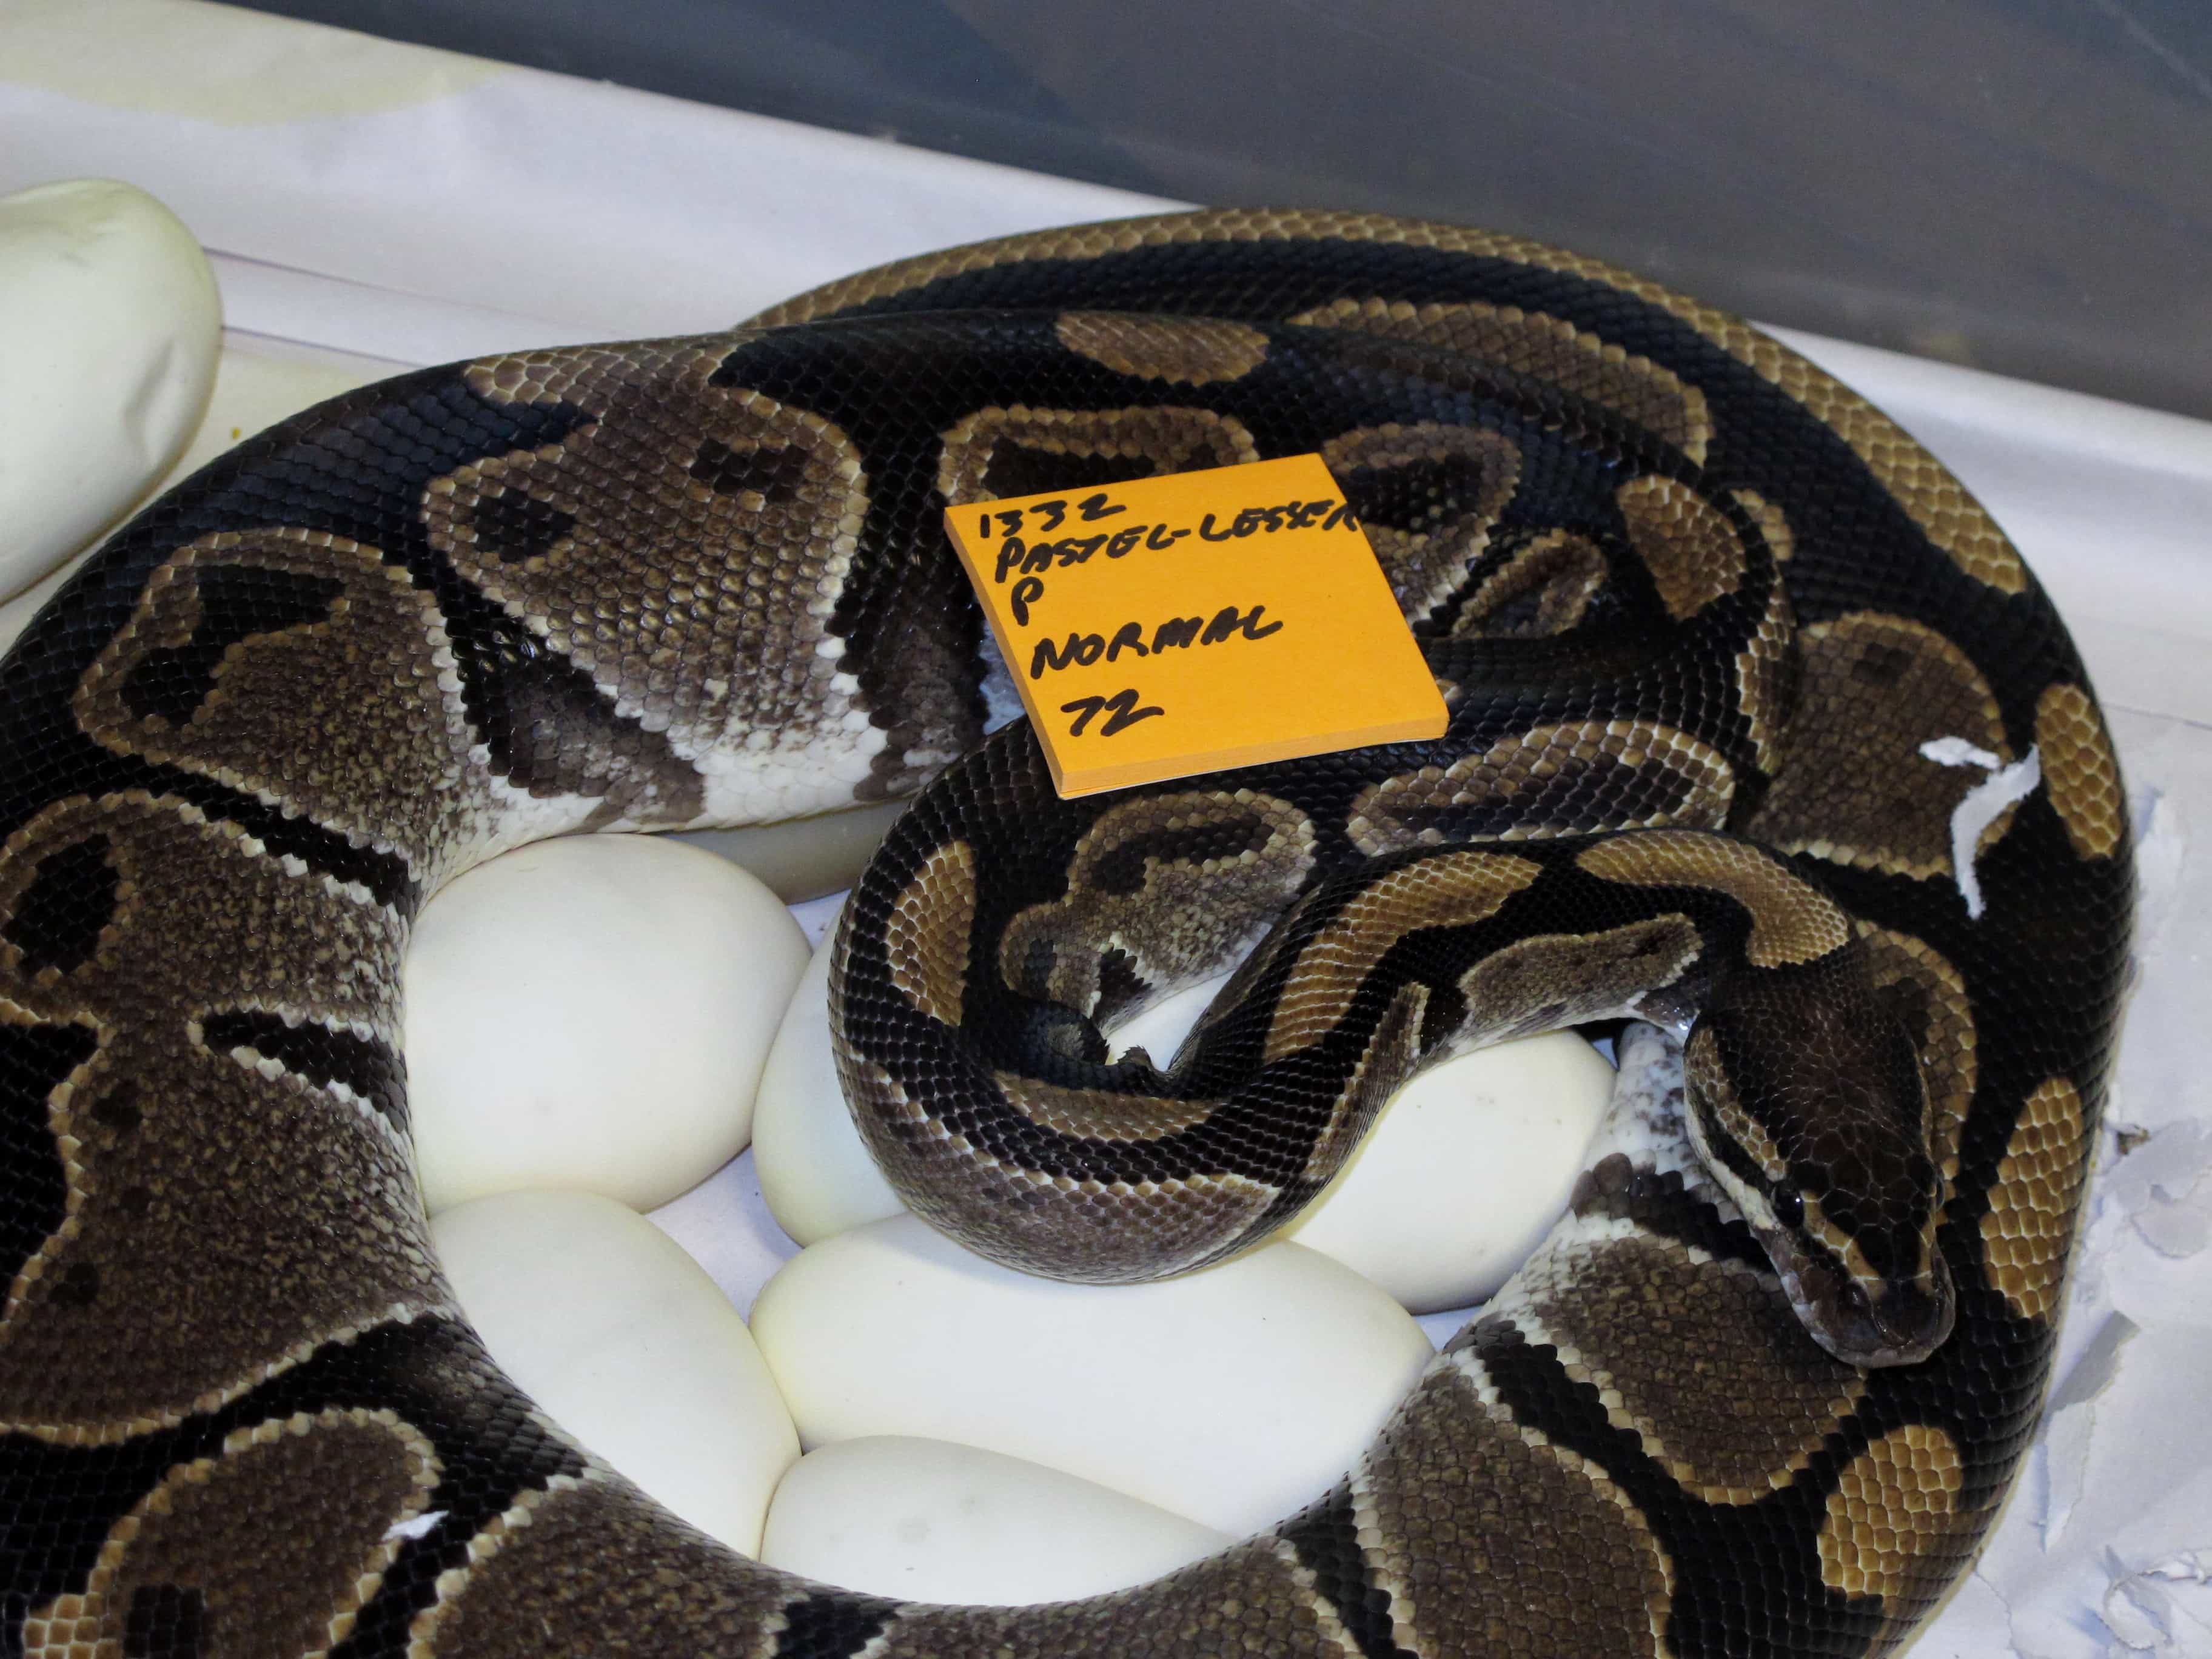 Ball Python on eggs